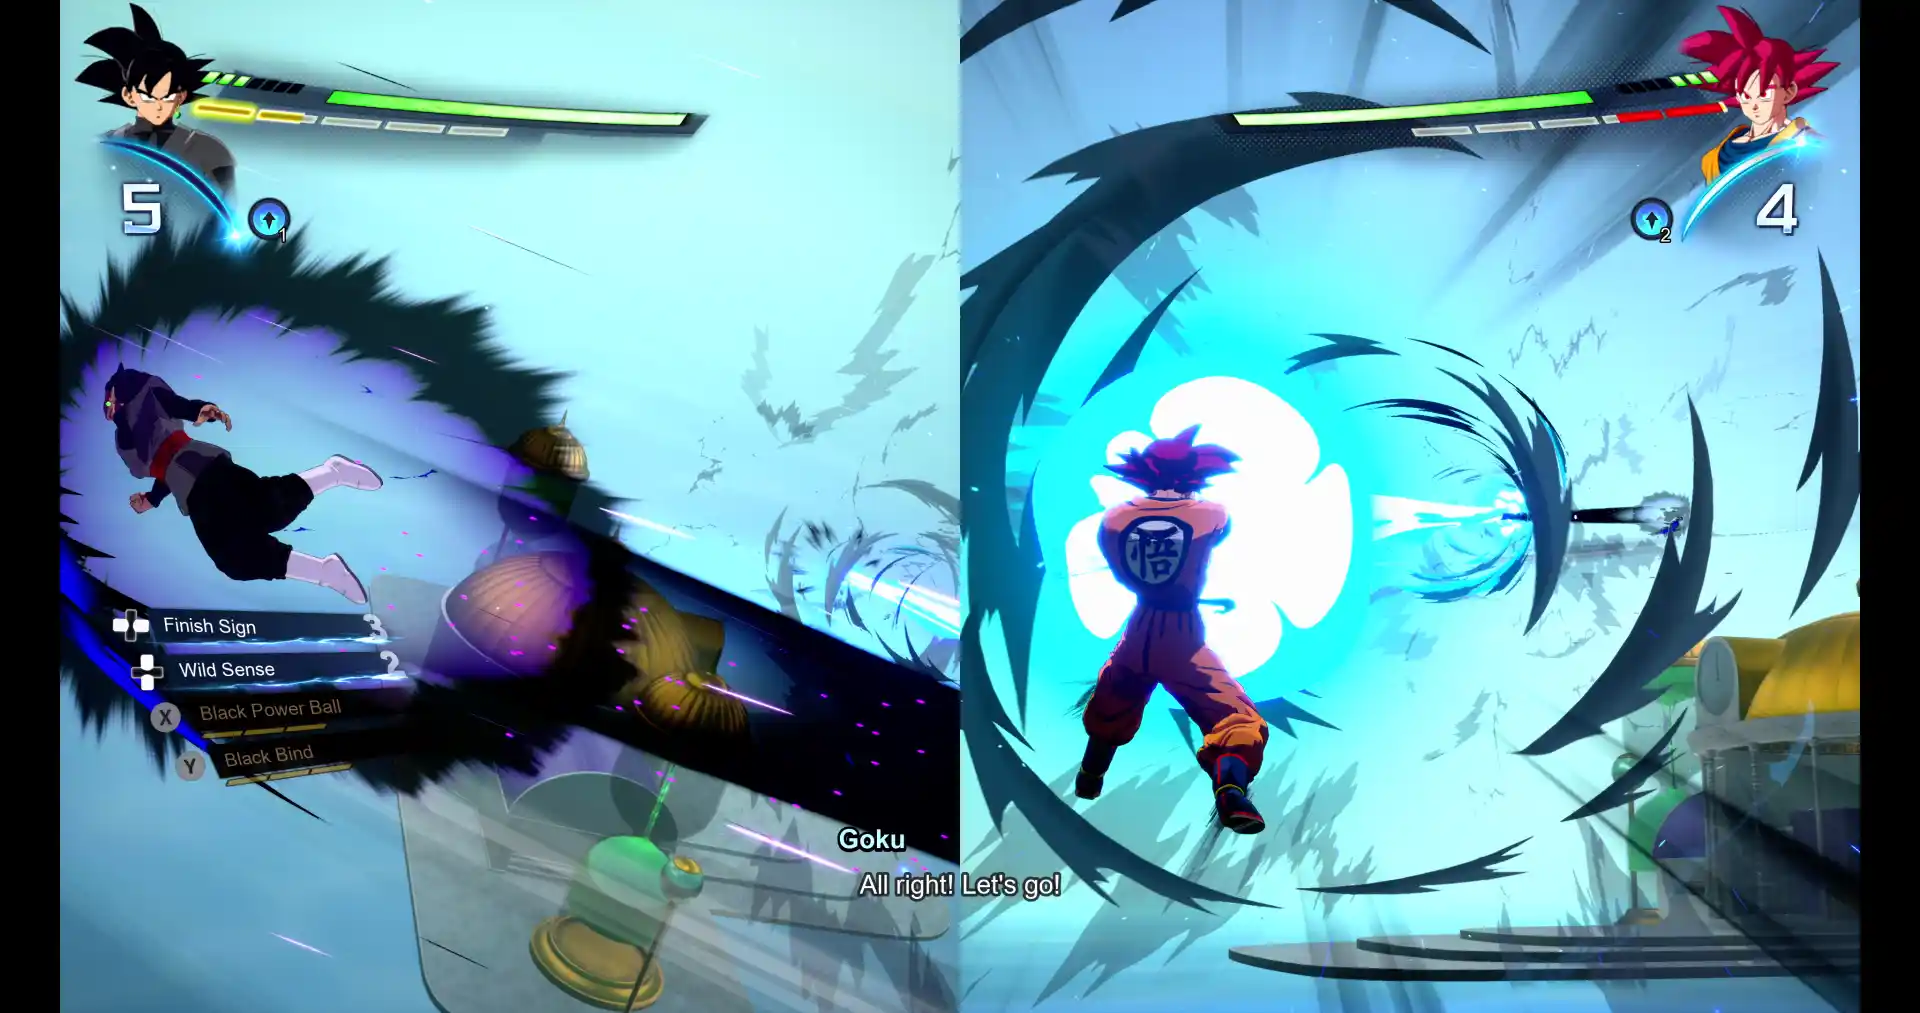 DRAGON BALL: Sparking! ZERO modalità di gioco e nuove caratteristiche del gameplay nel trailer. Split-screen 